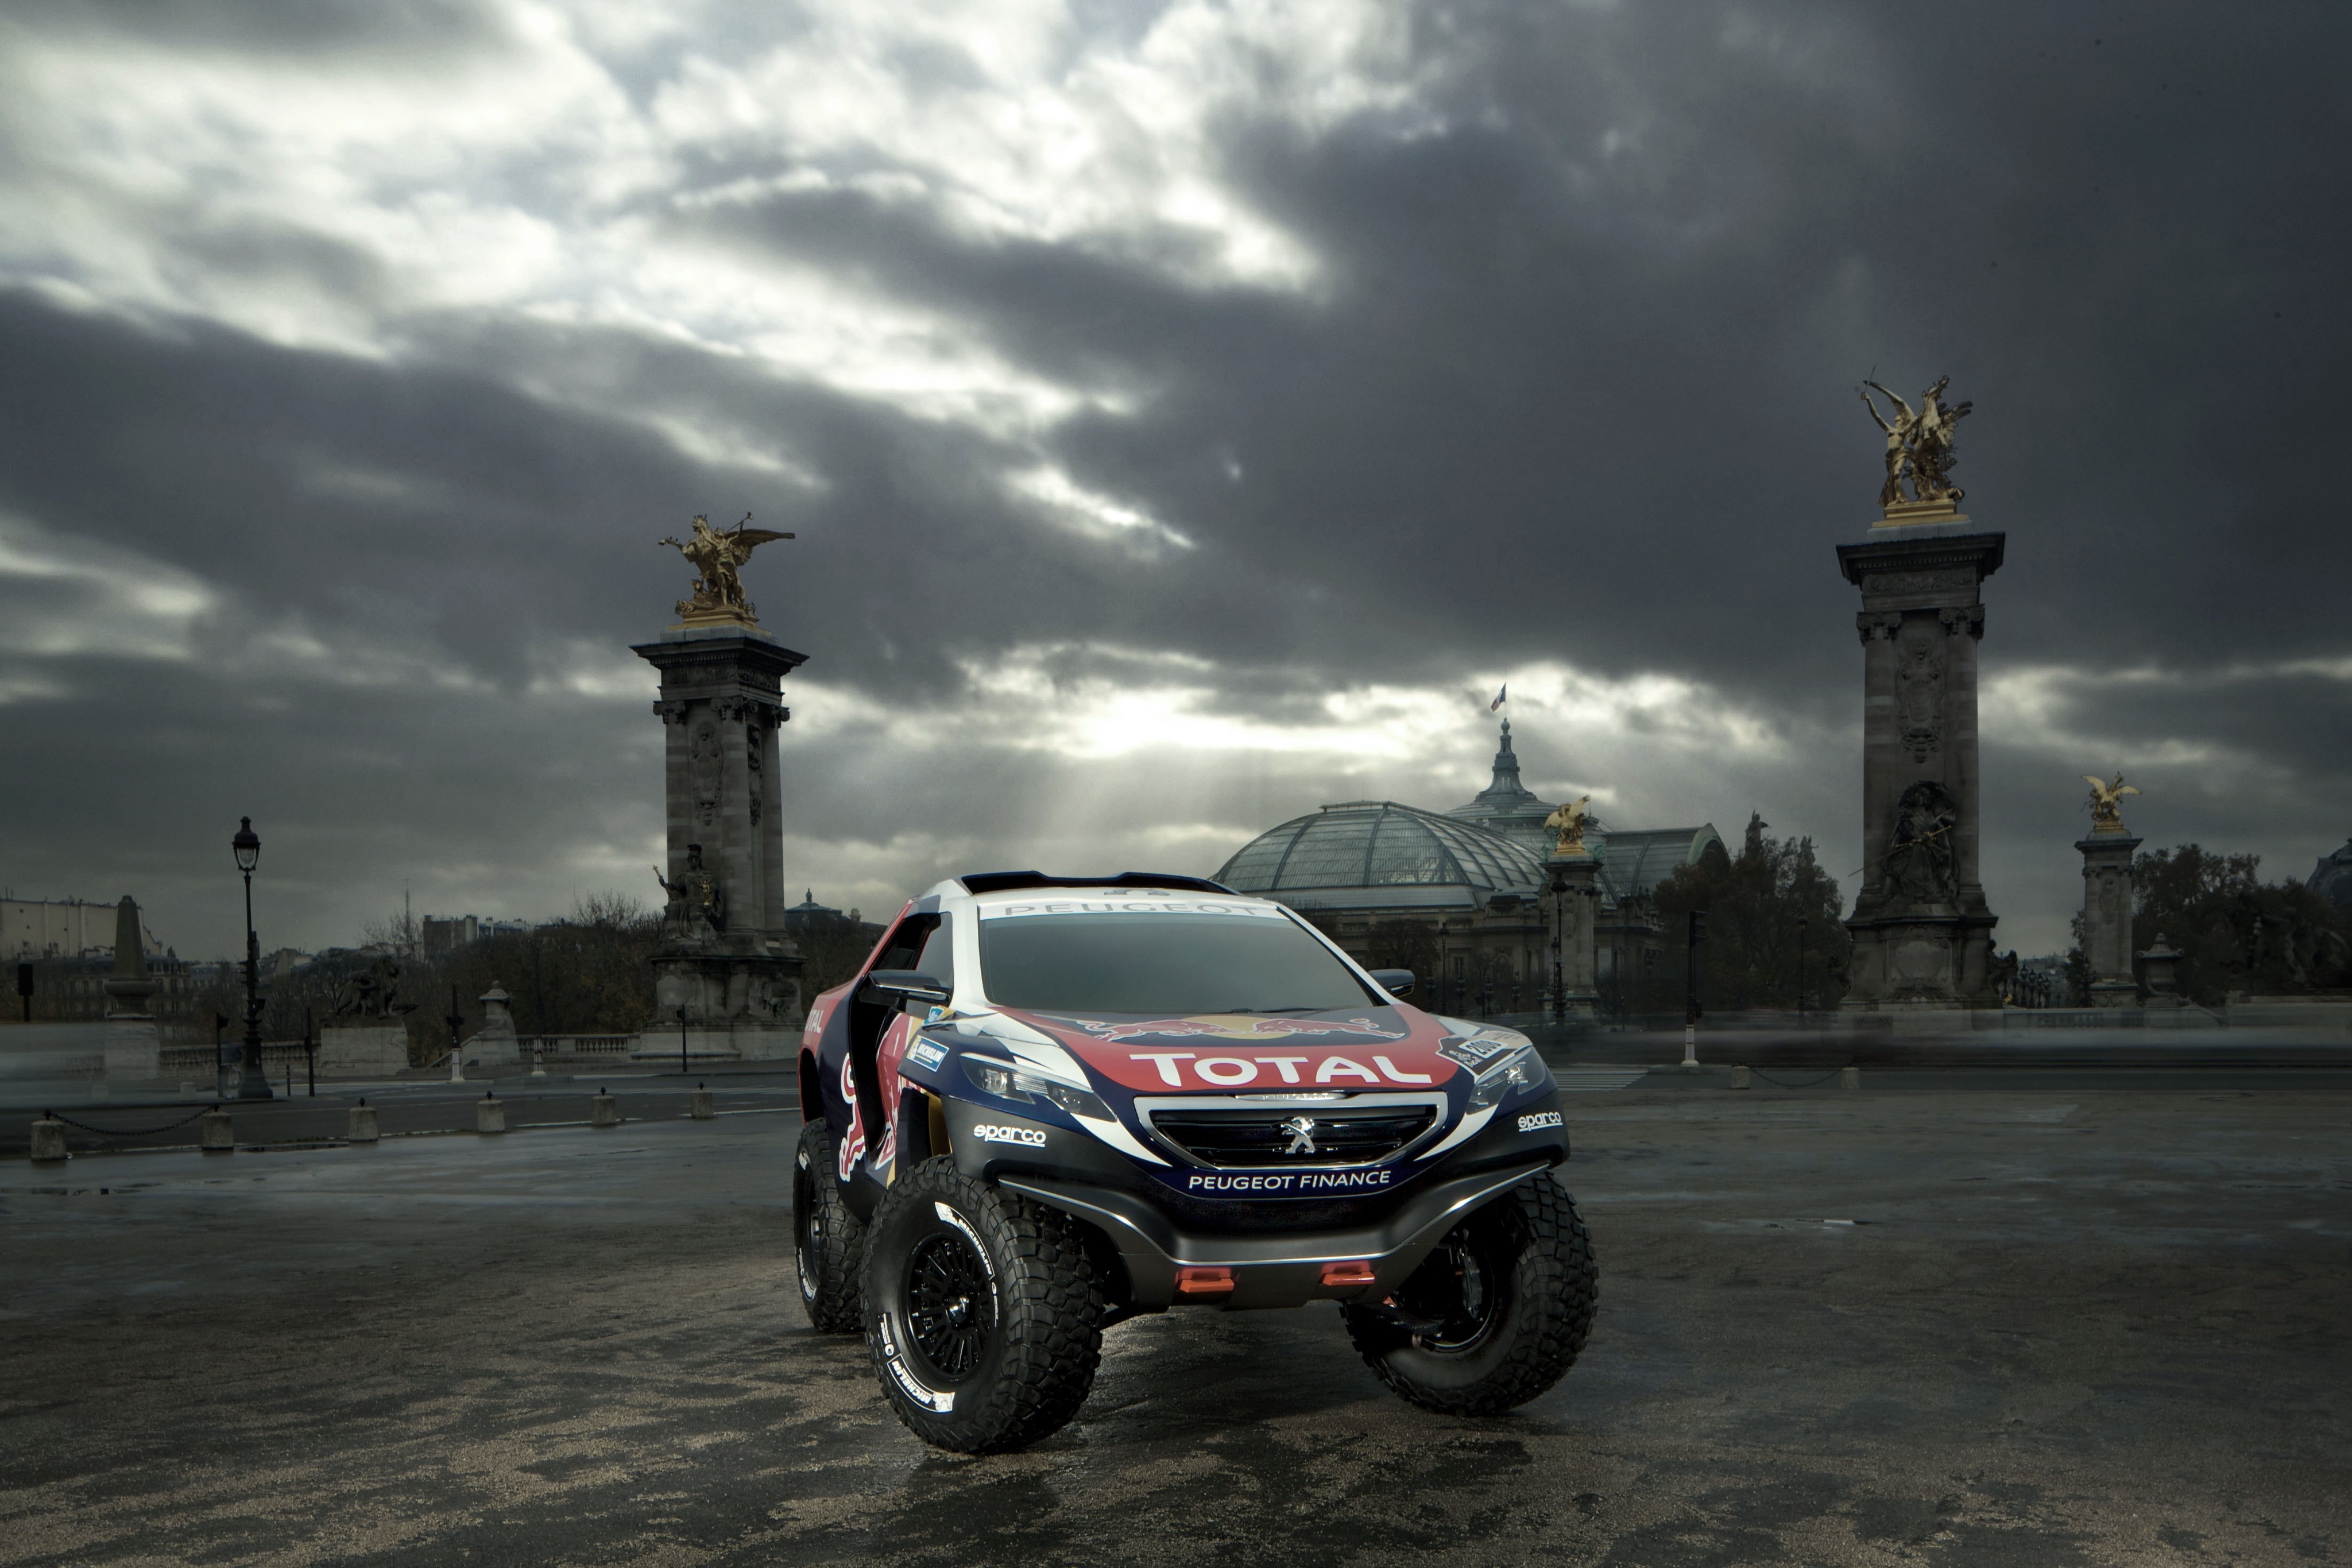 2014, Peugeot, 2008, Dkr, Dakar, Offroad, Race, Racing, Awd, 4x4 Wallpaper